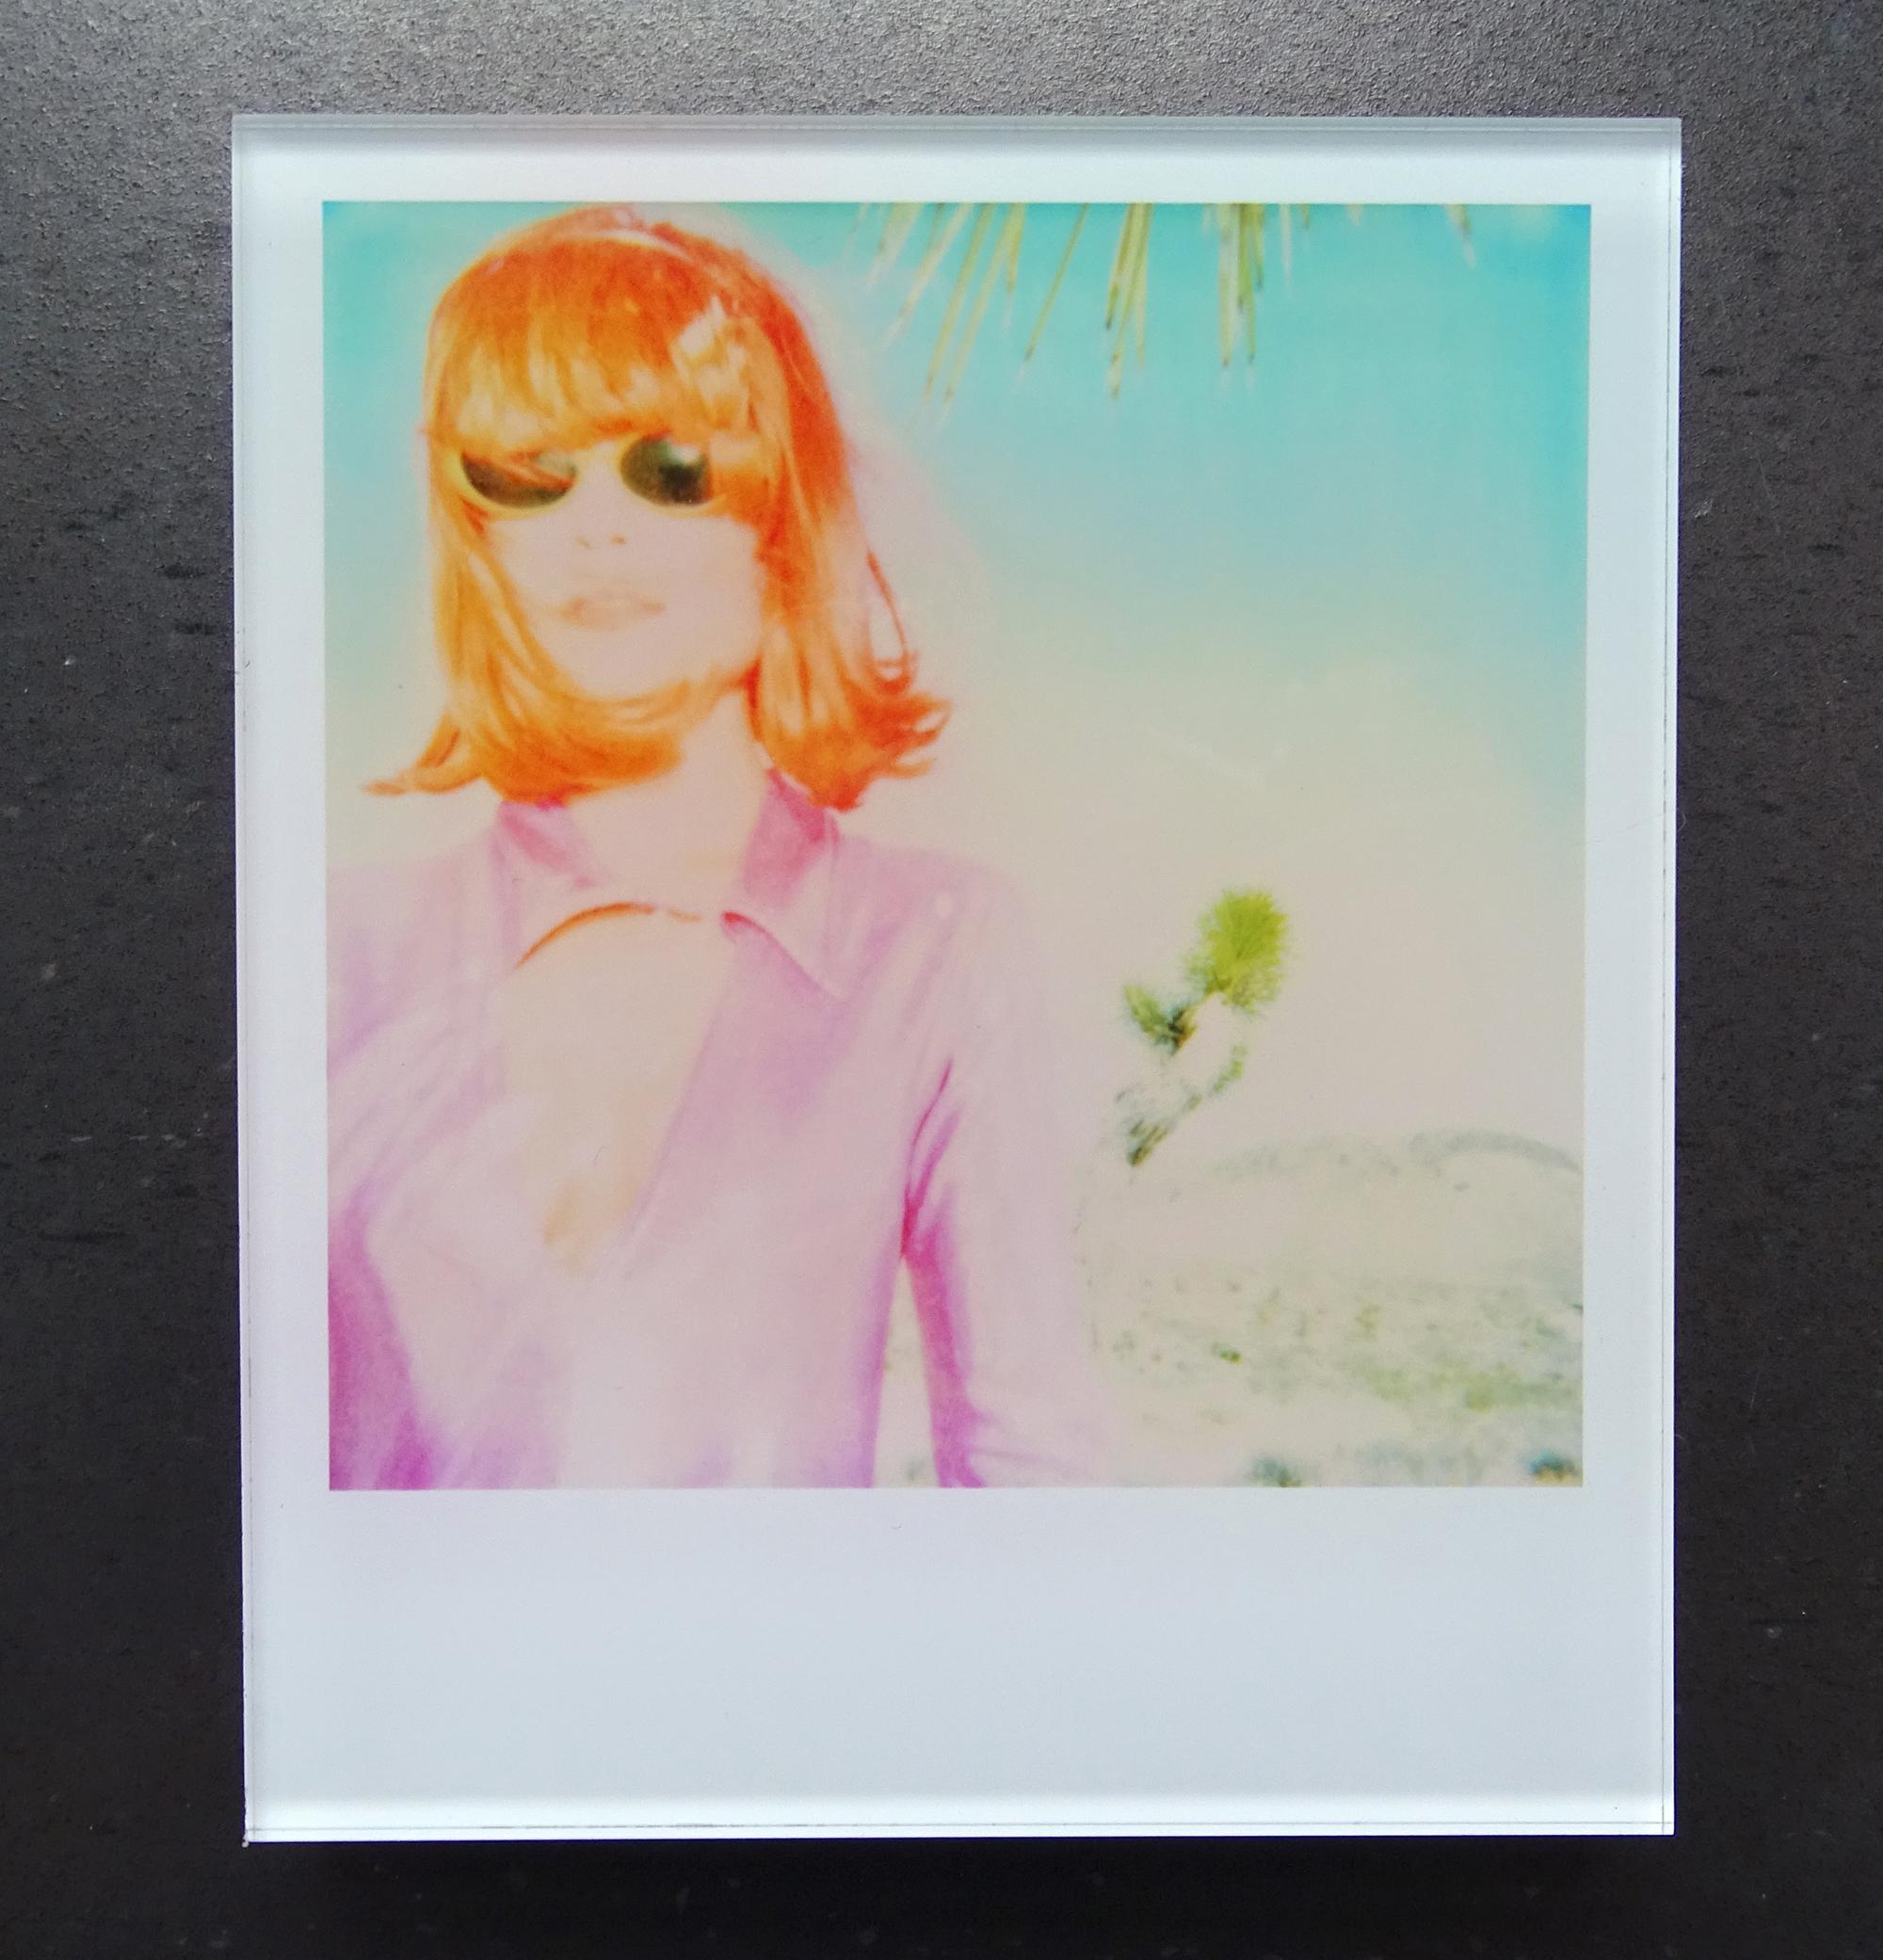 Les minis de Stefanie Schneider
Long Way Home (Stranger than Paradise), 1999

Signé et marque de signature au verso.
Photographies numériques couleur Lambda basées sur un Polaroïd.
Pris en sandwich entre du plexiglas (épaisseur 0,7cm)

Polaroid